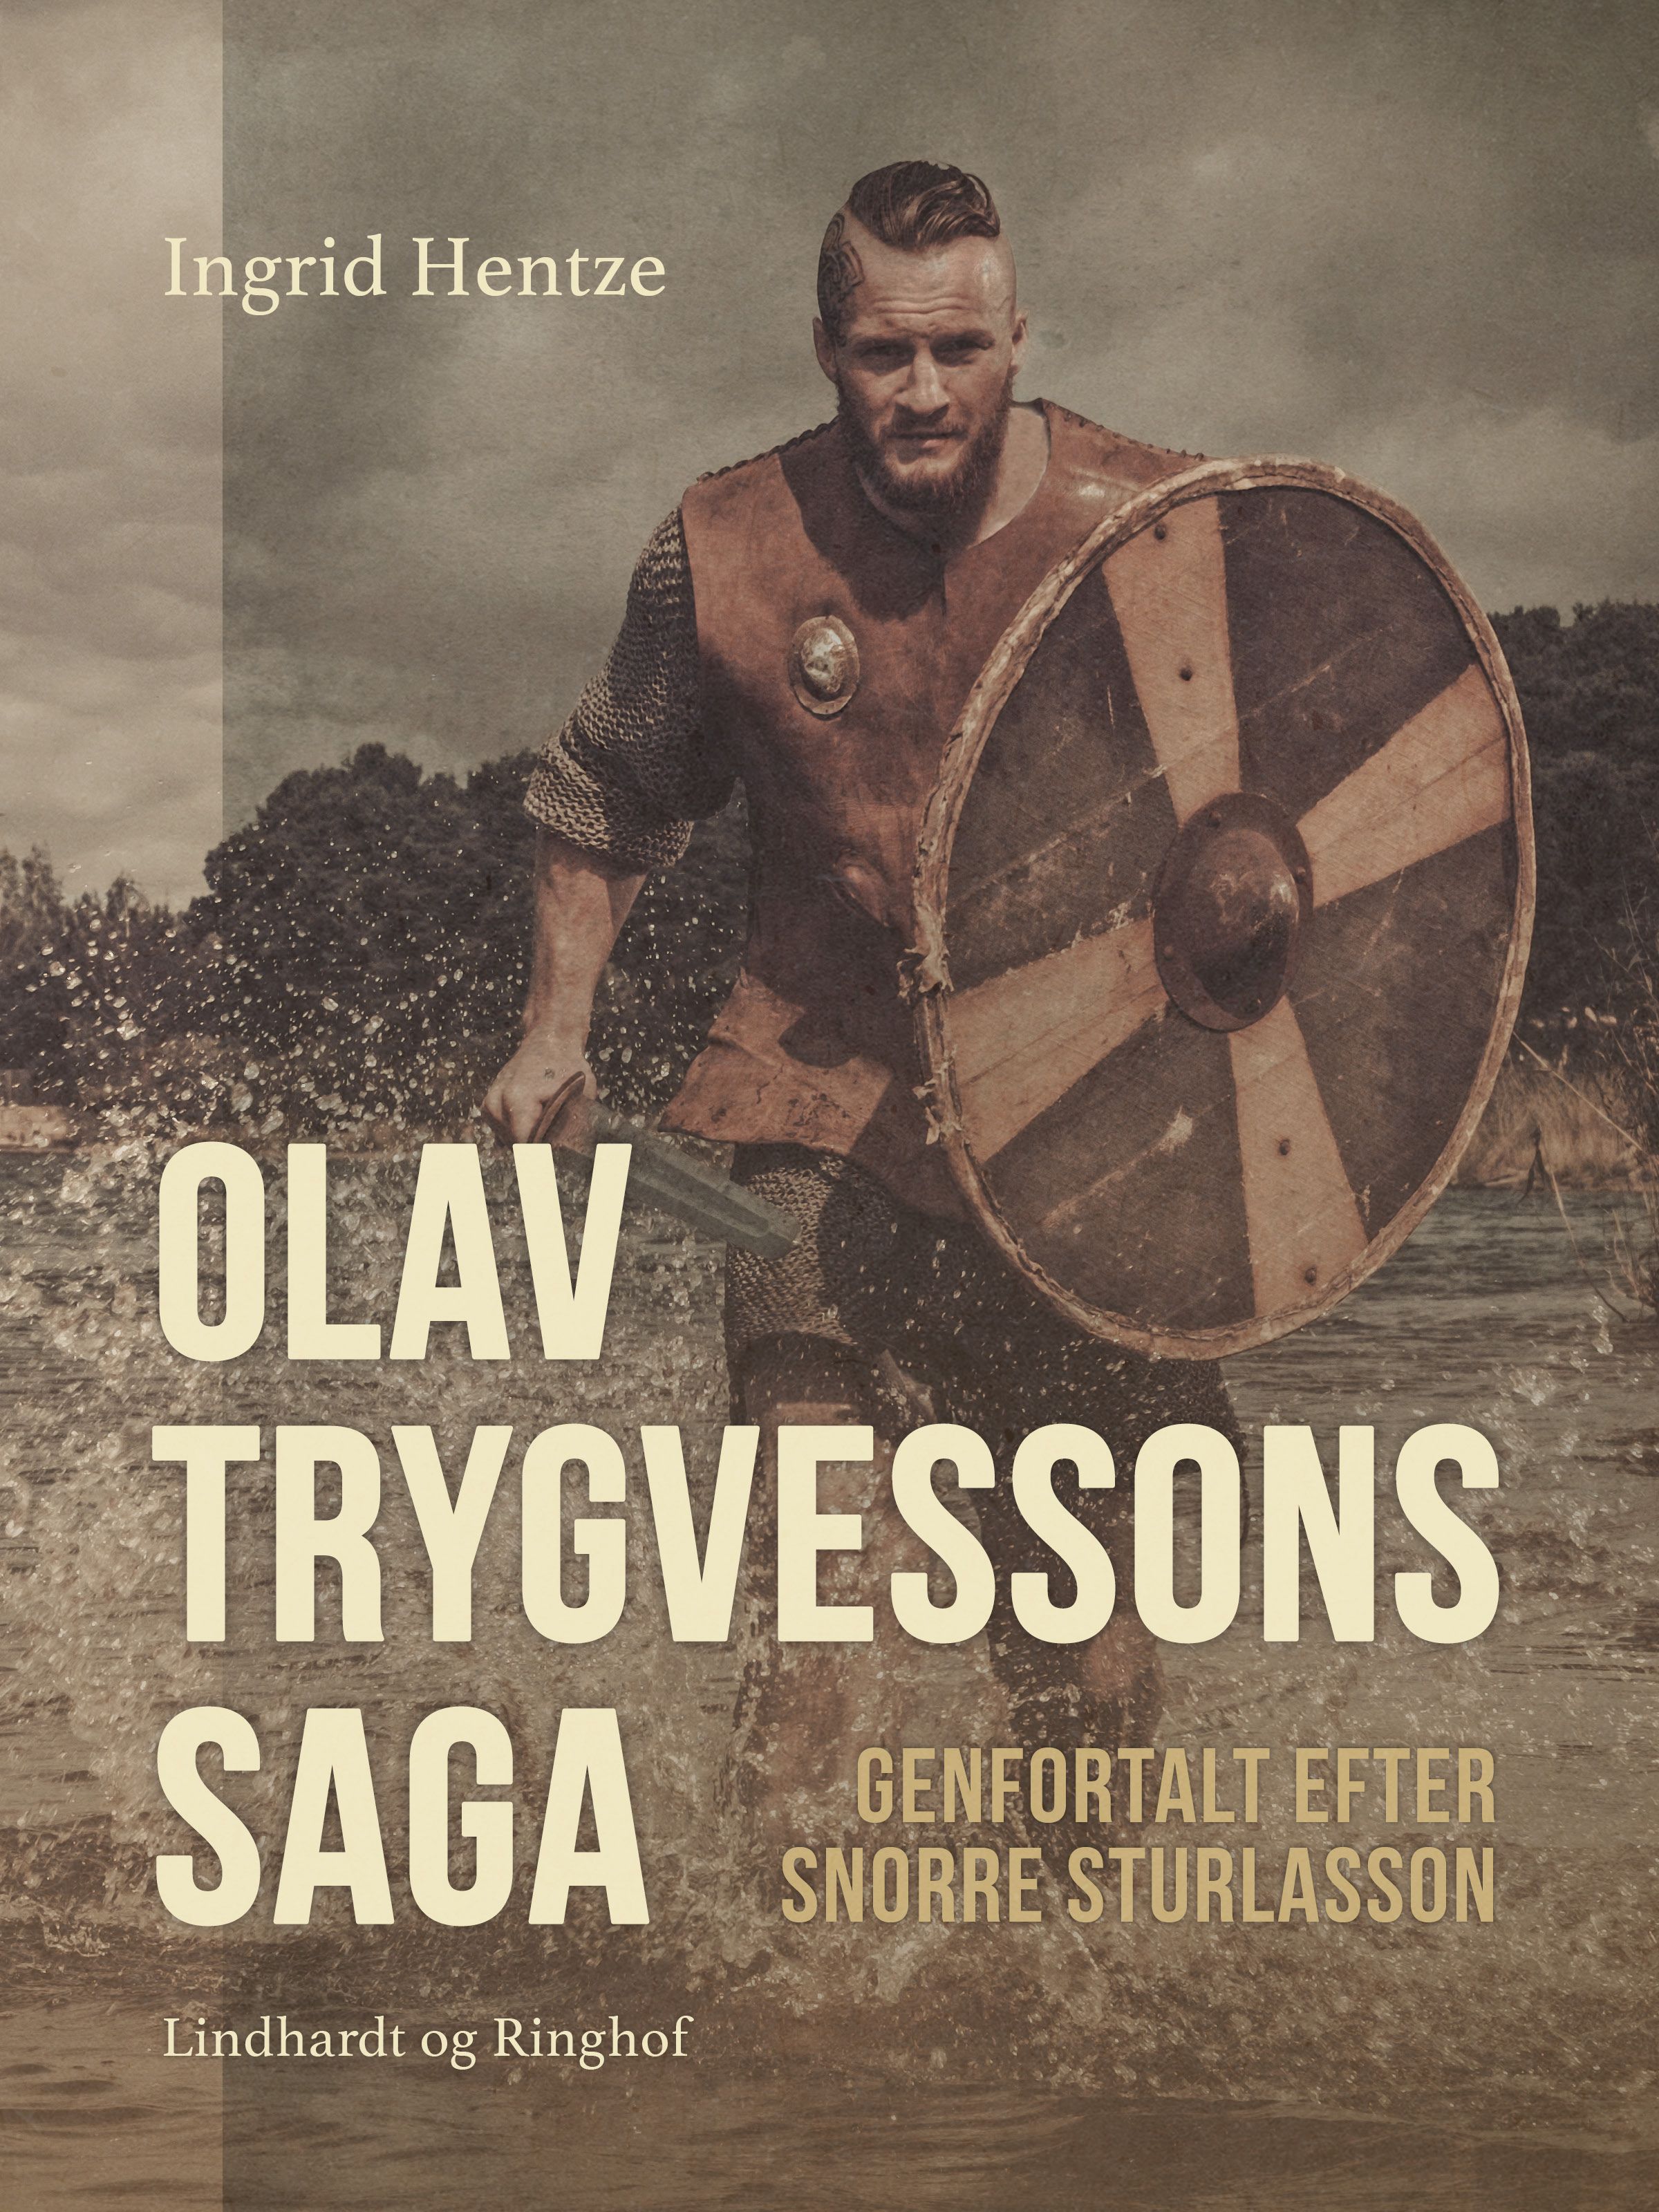 Olav Trygvessons saga. Genfortalt efter Snorre Sturlasson, e-bog af Ingrid Hentze